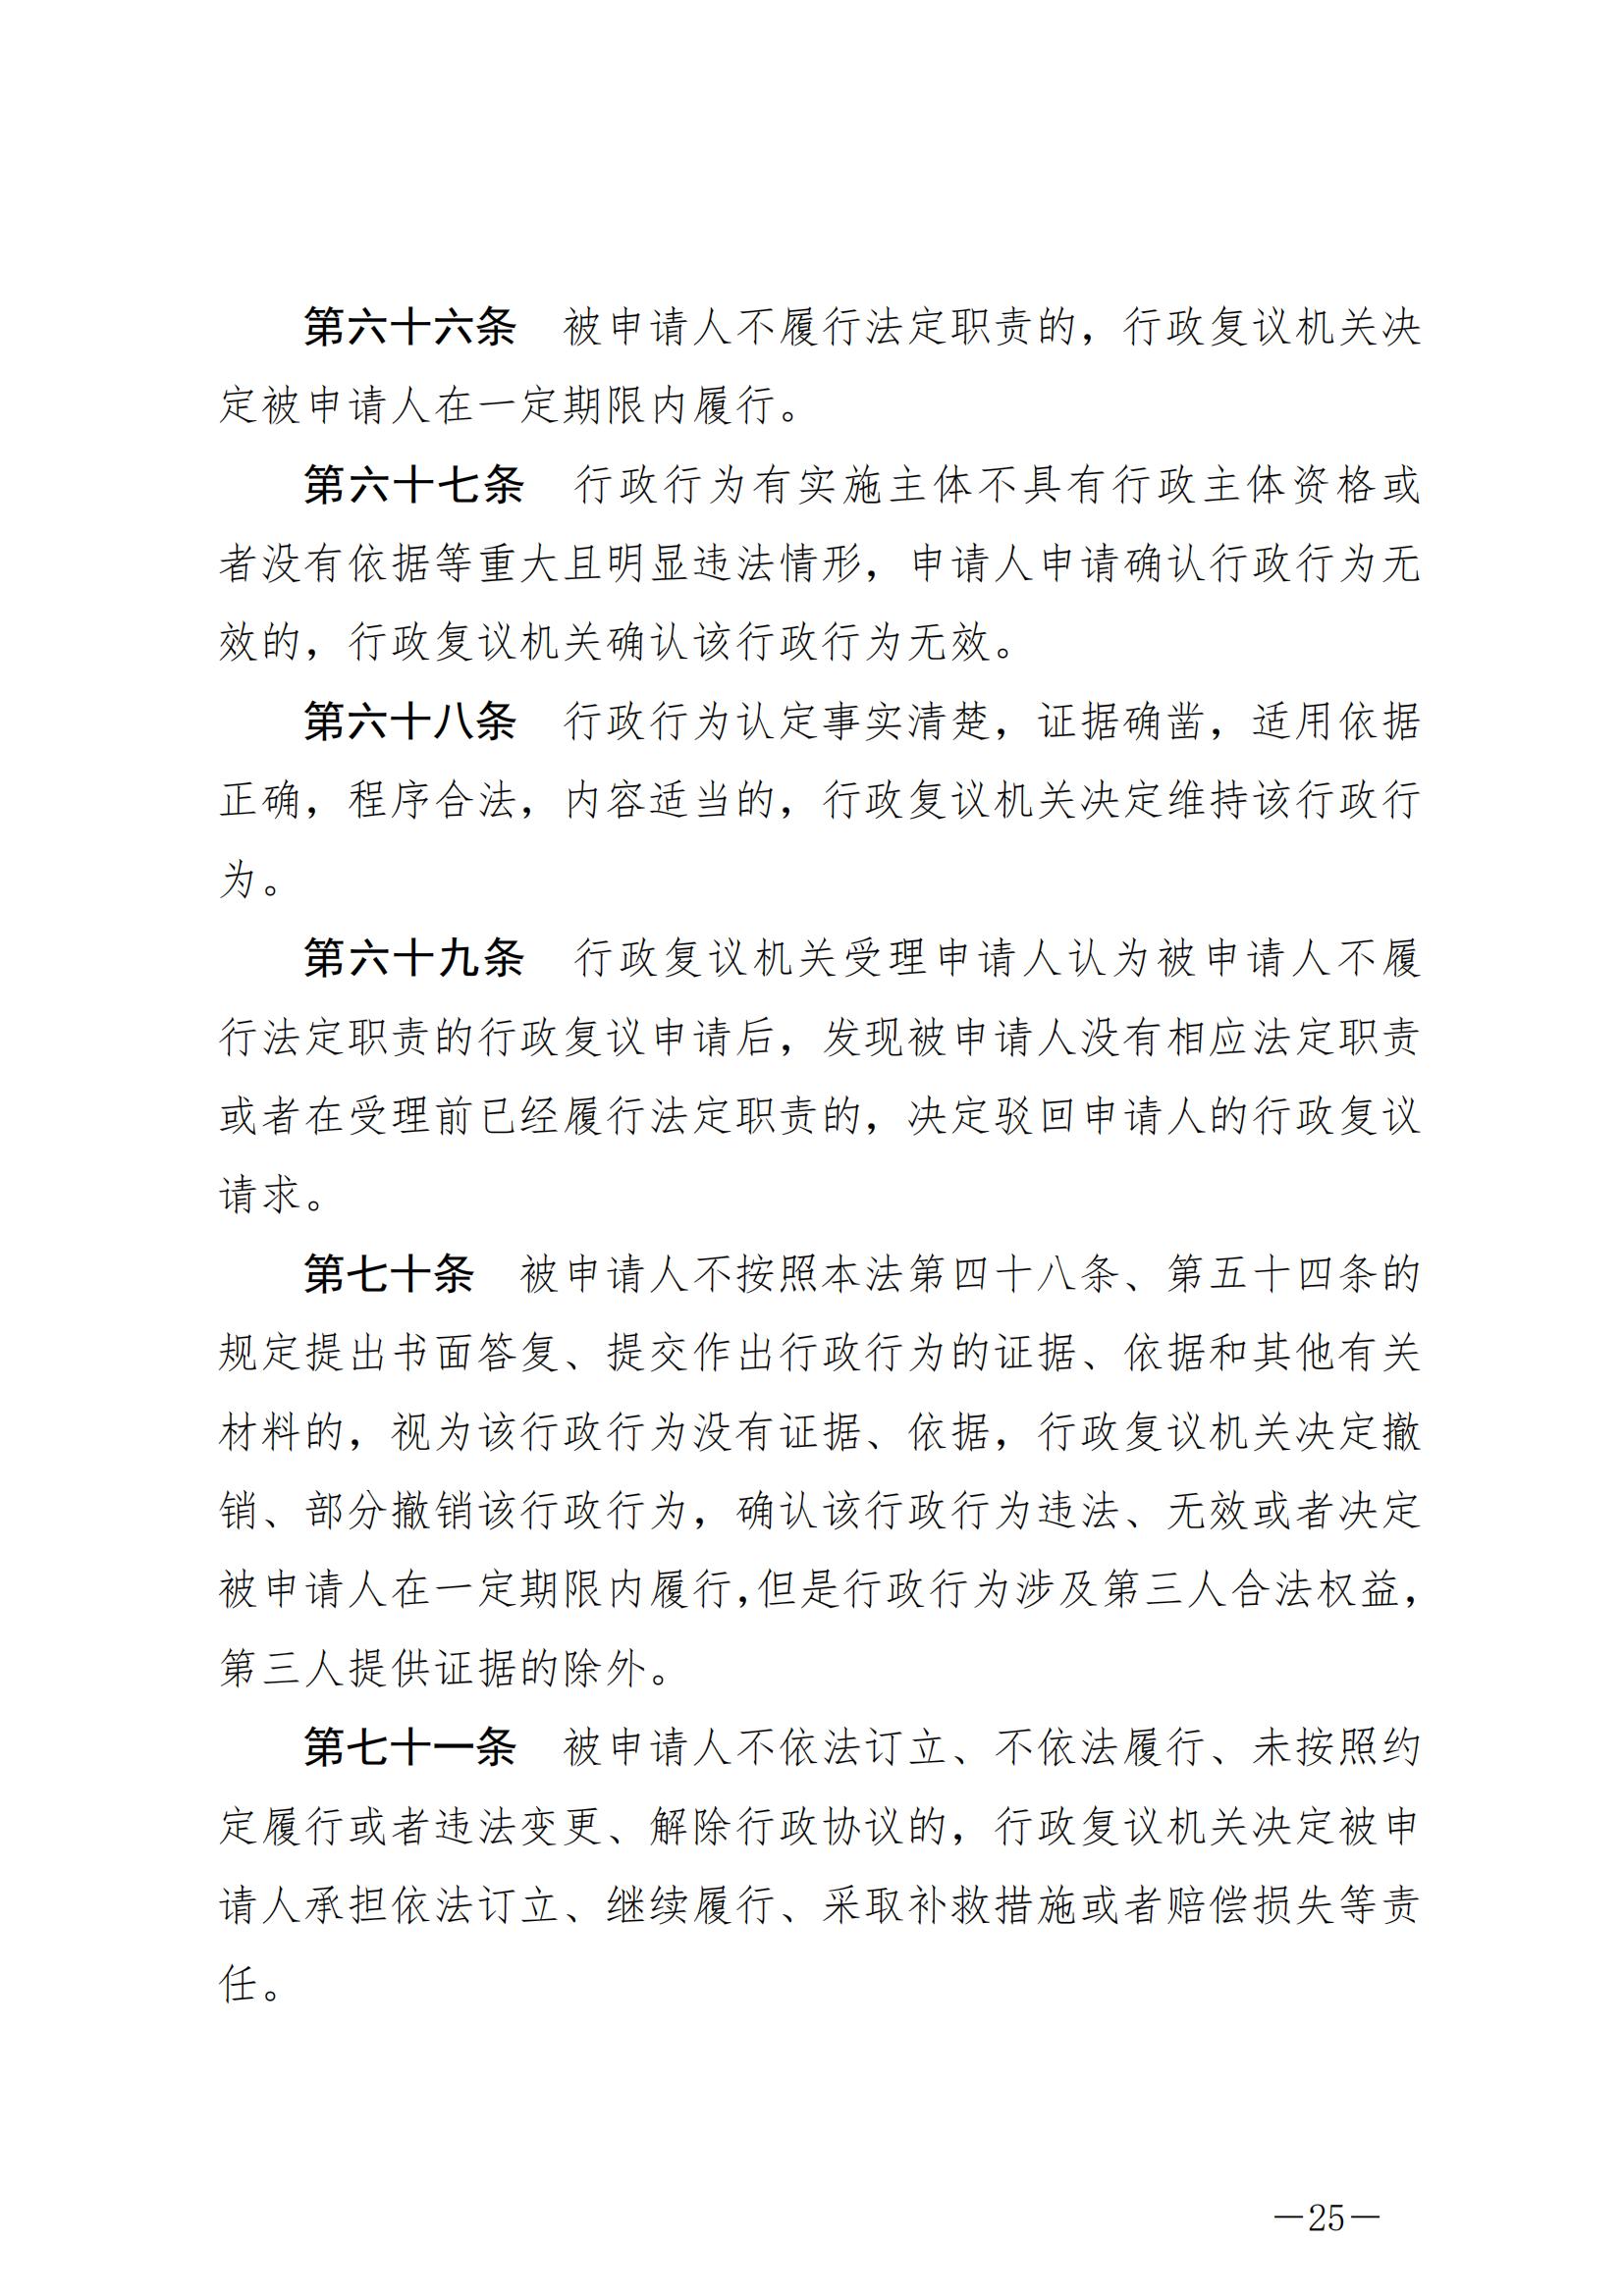 《中华人民共和国行政复议法》_20231204154310_24.jpg